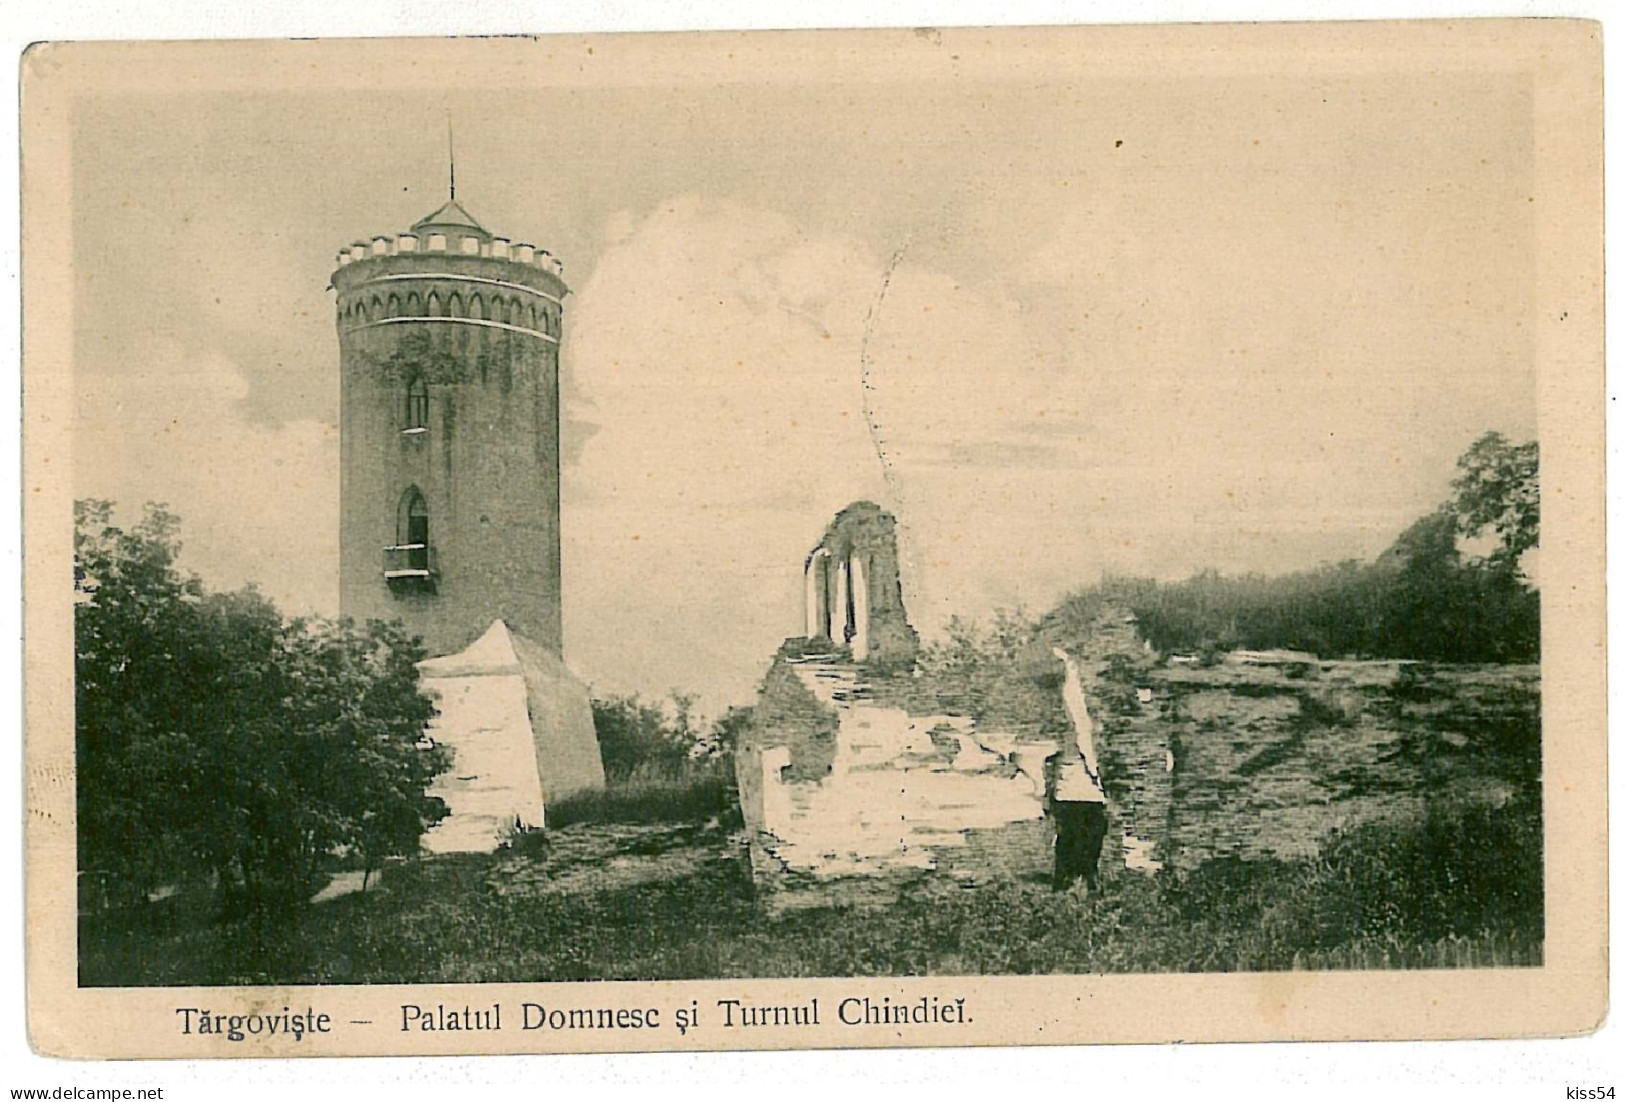 RO 77 - 7760 TARGOVISTE, Turnul Chindiei, Romania - Old Postcard - Used - 1913 - Romania